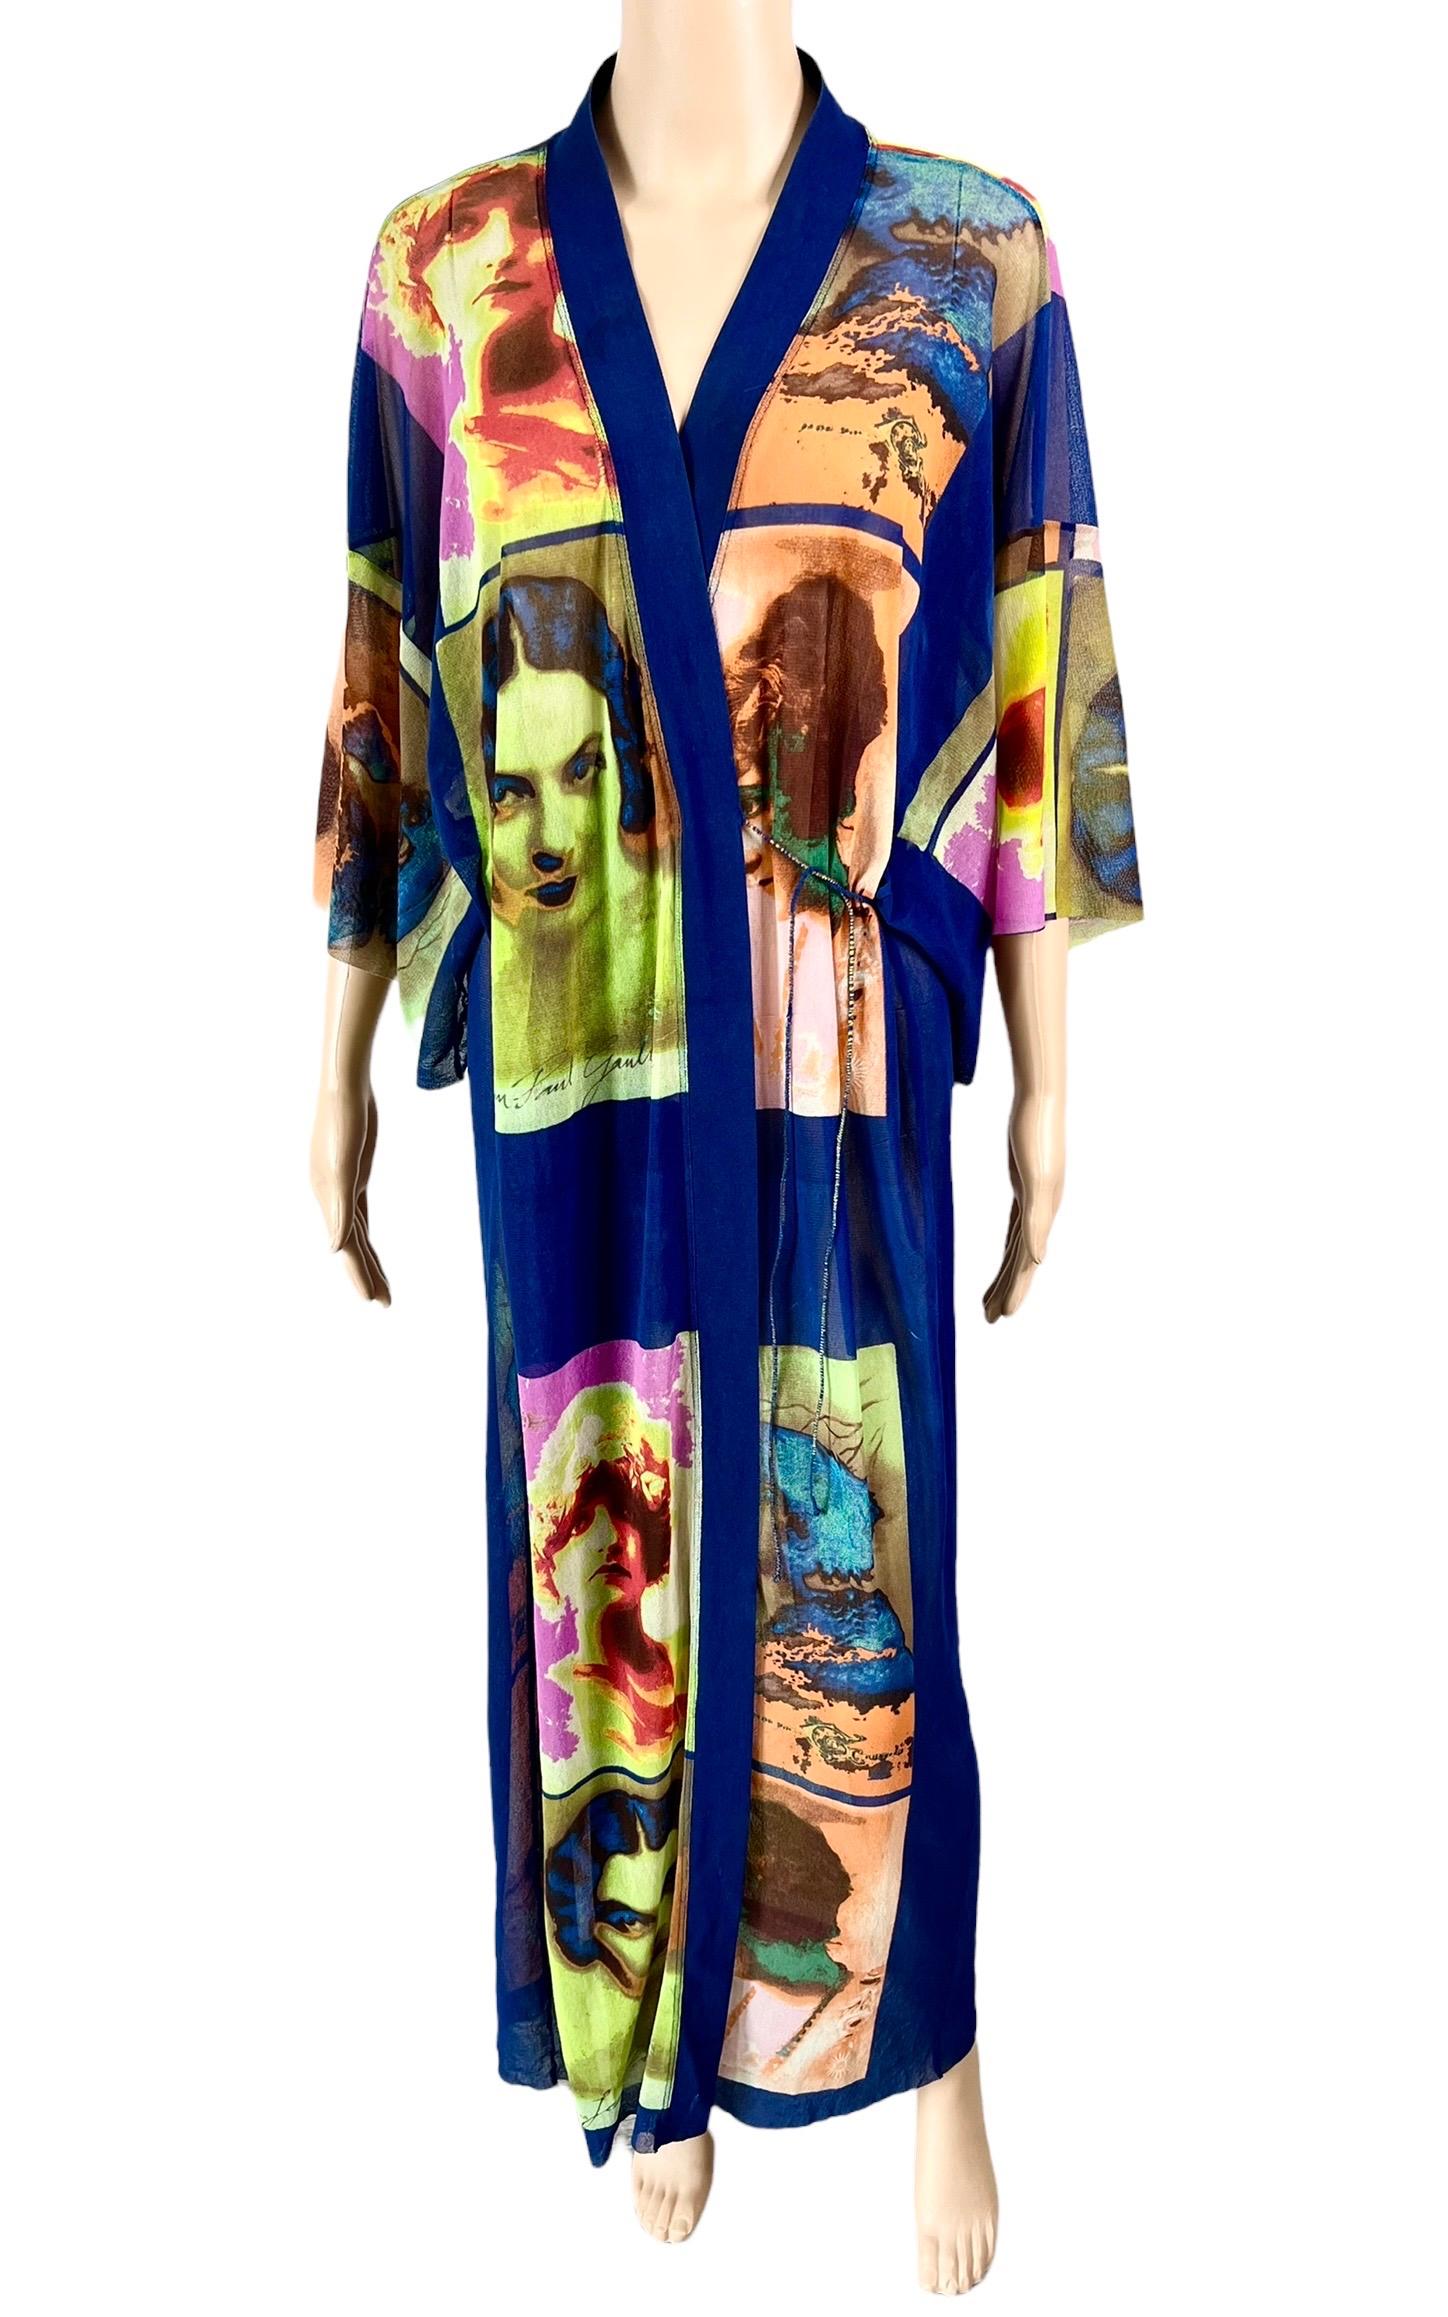 Jean Paul Gaultier Soleil S/S 2002 Vintage “Portraits” Mesh Maxi Dress Kimono For Sale 1